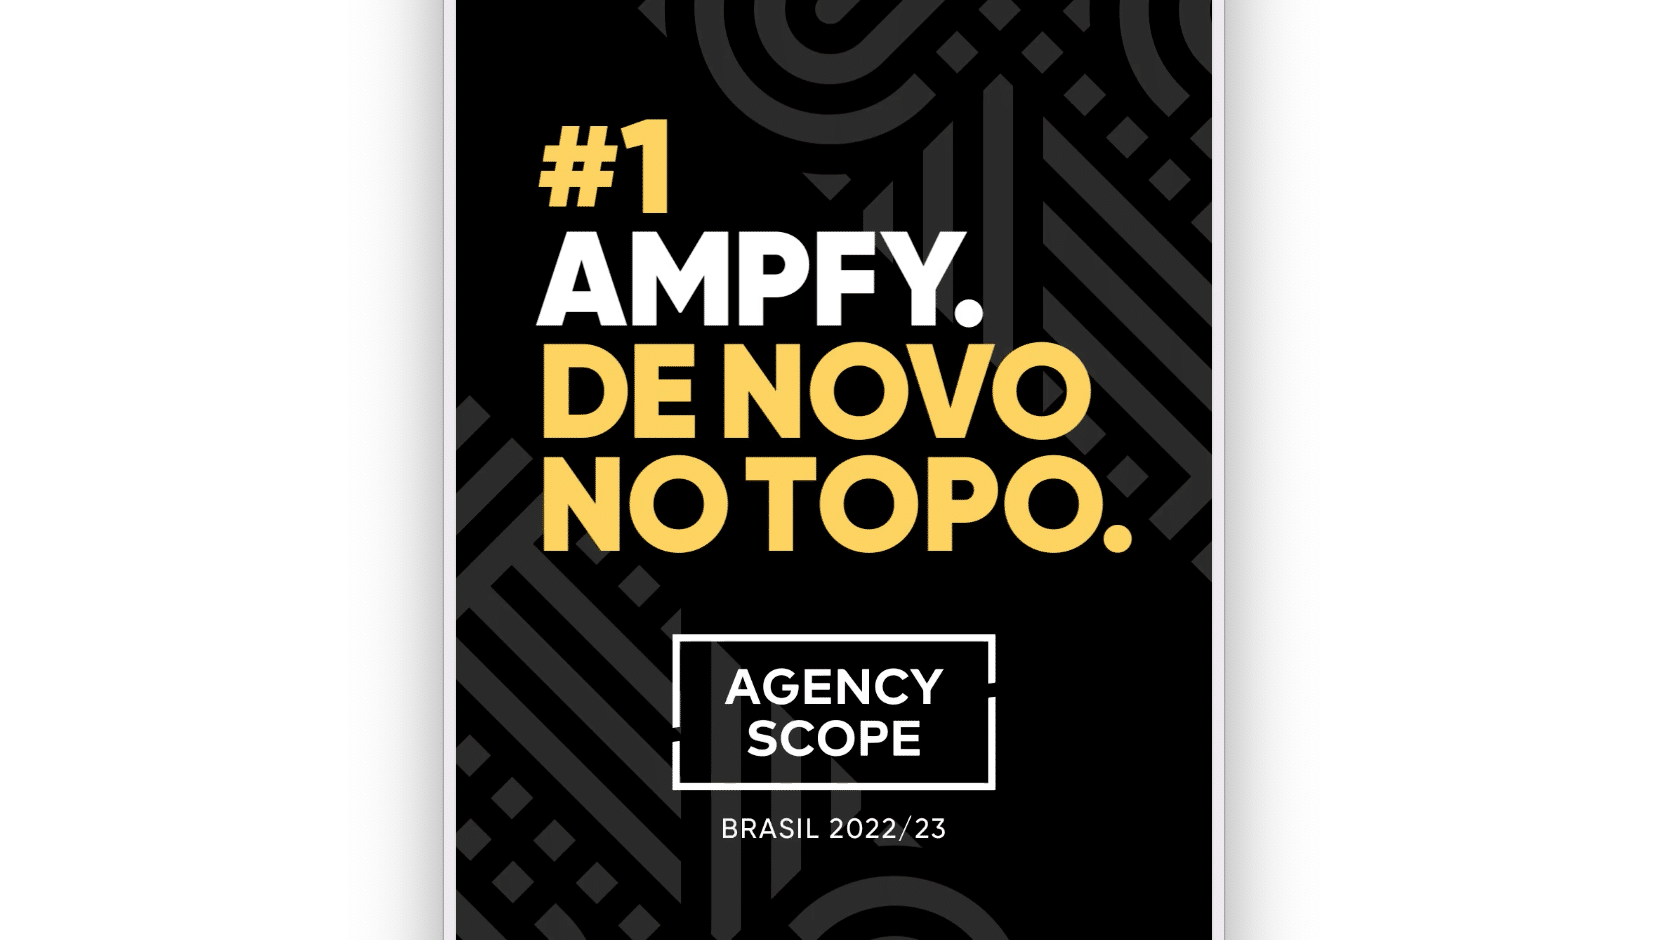 Ampfy novamente foi escolhida na Pesquisa da Scope como Agência Nº 1